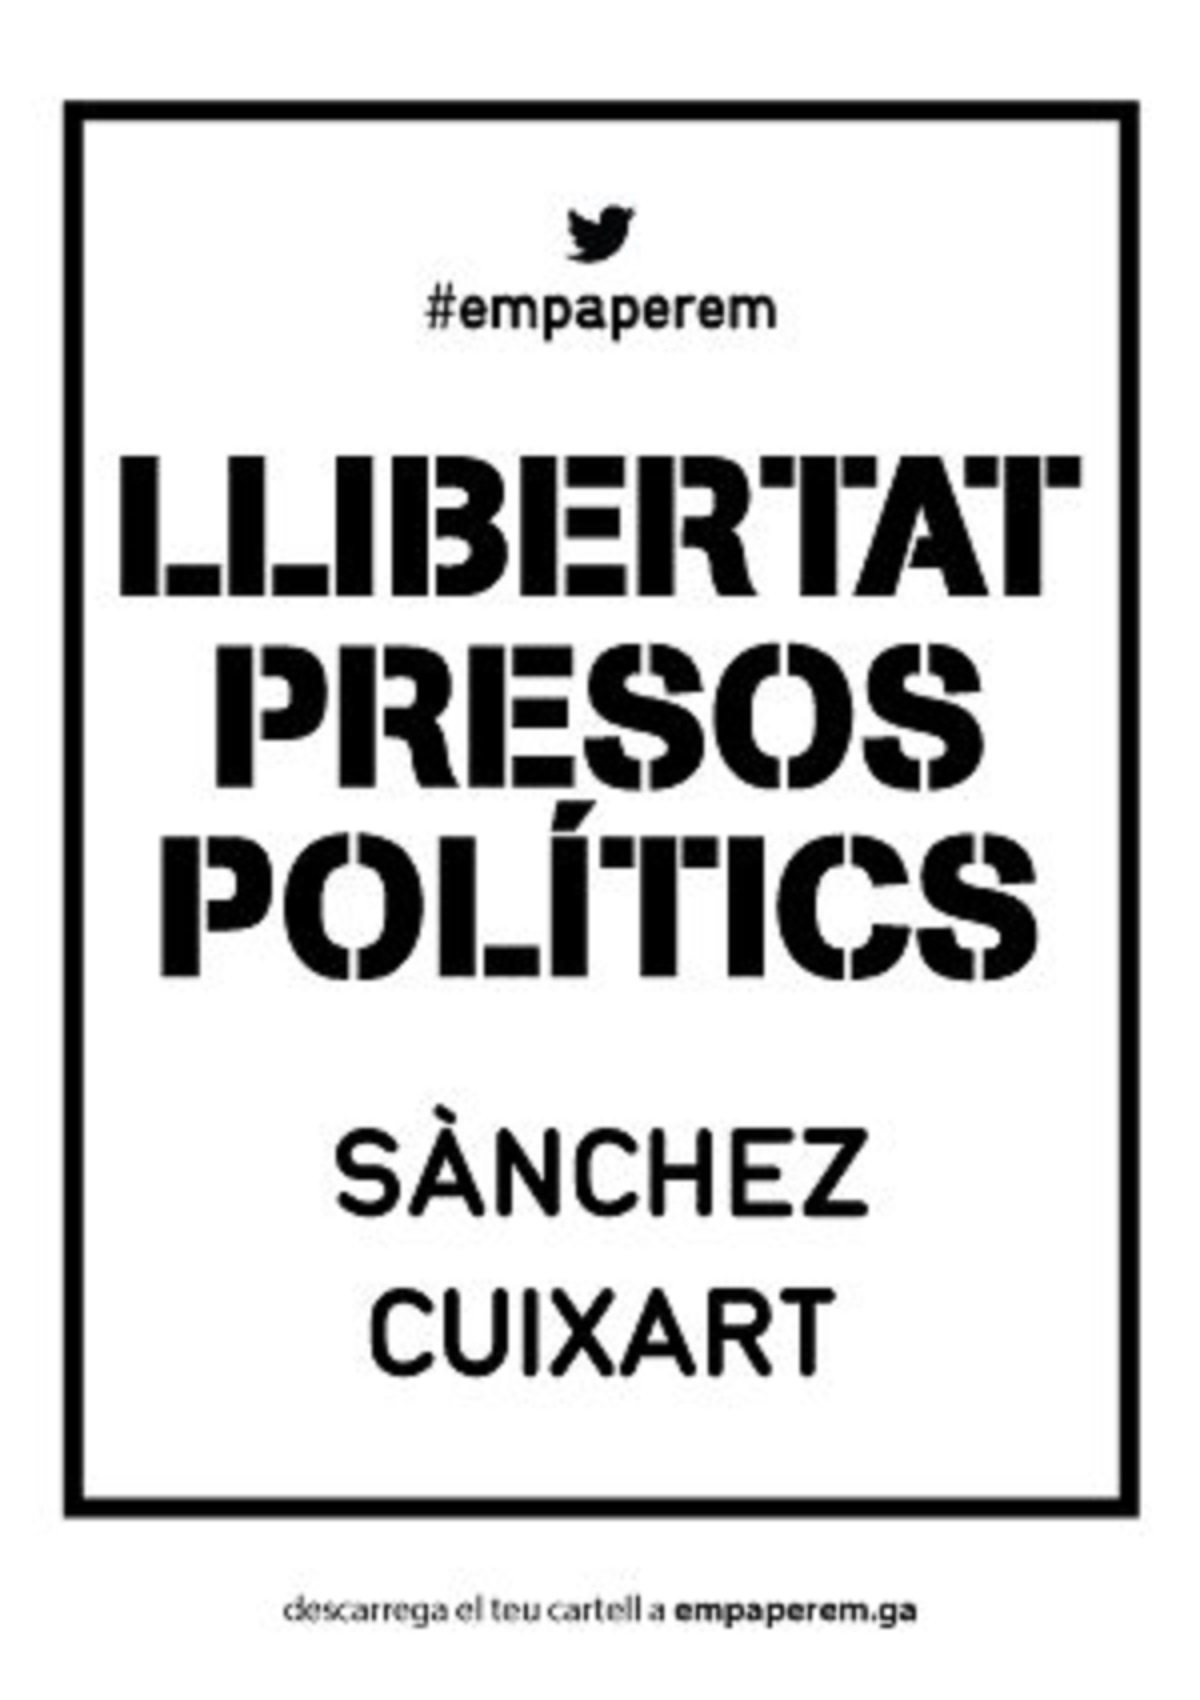 "Llibertat presos polítics", la nova campanya d'Empaperem